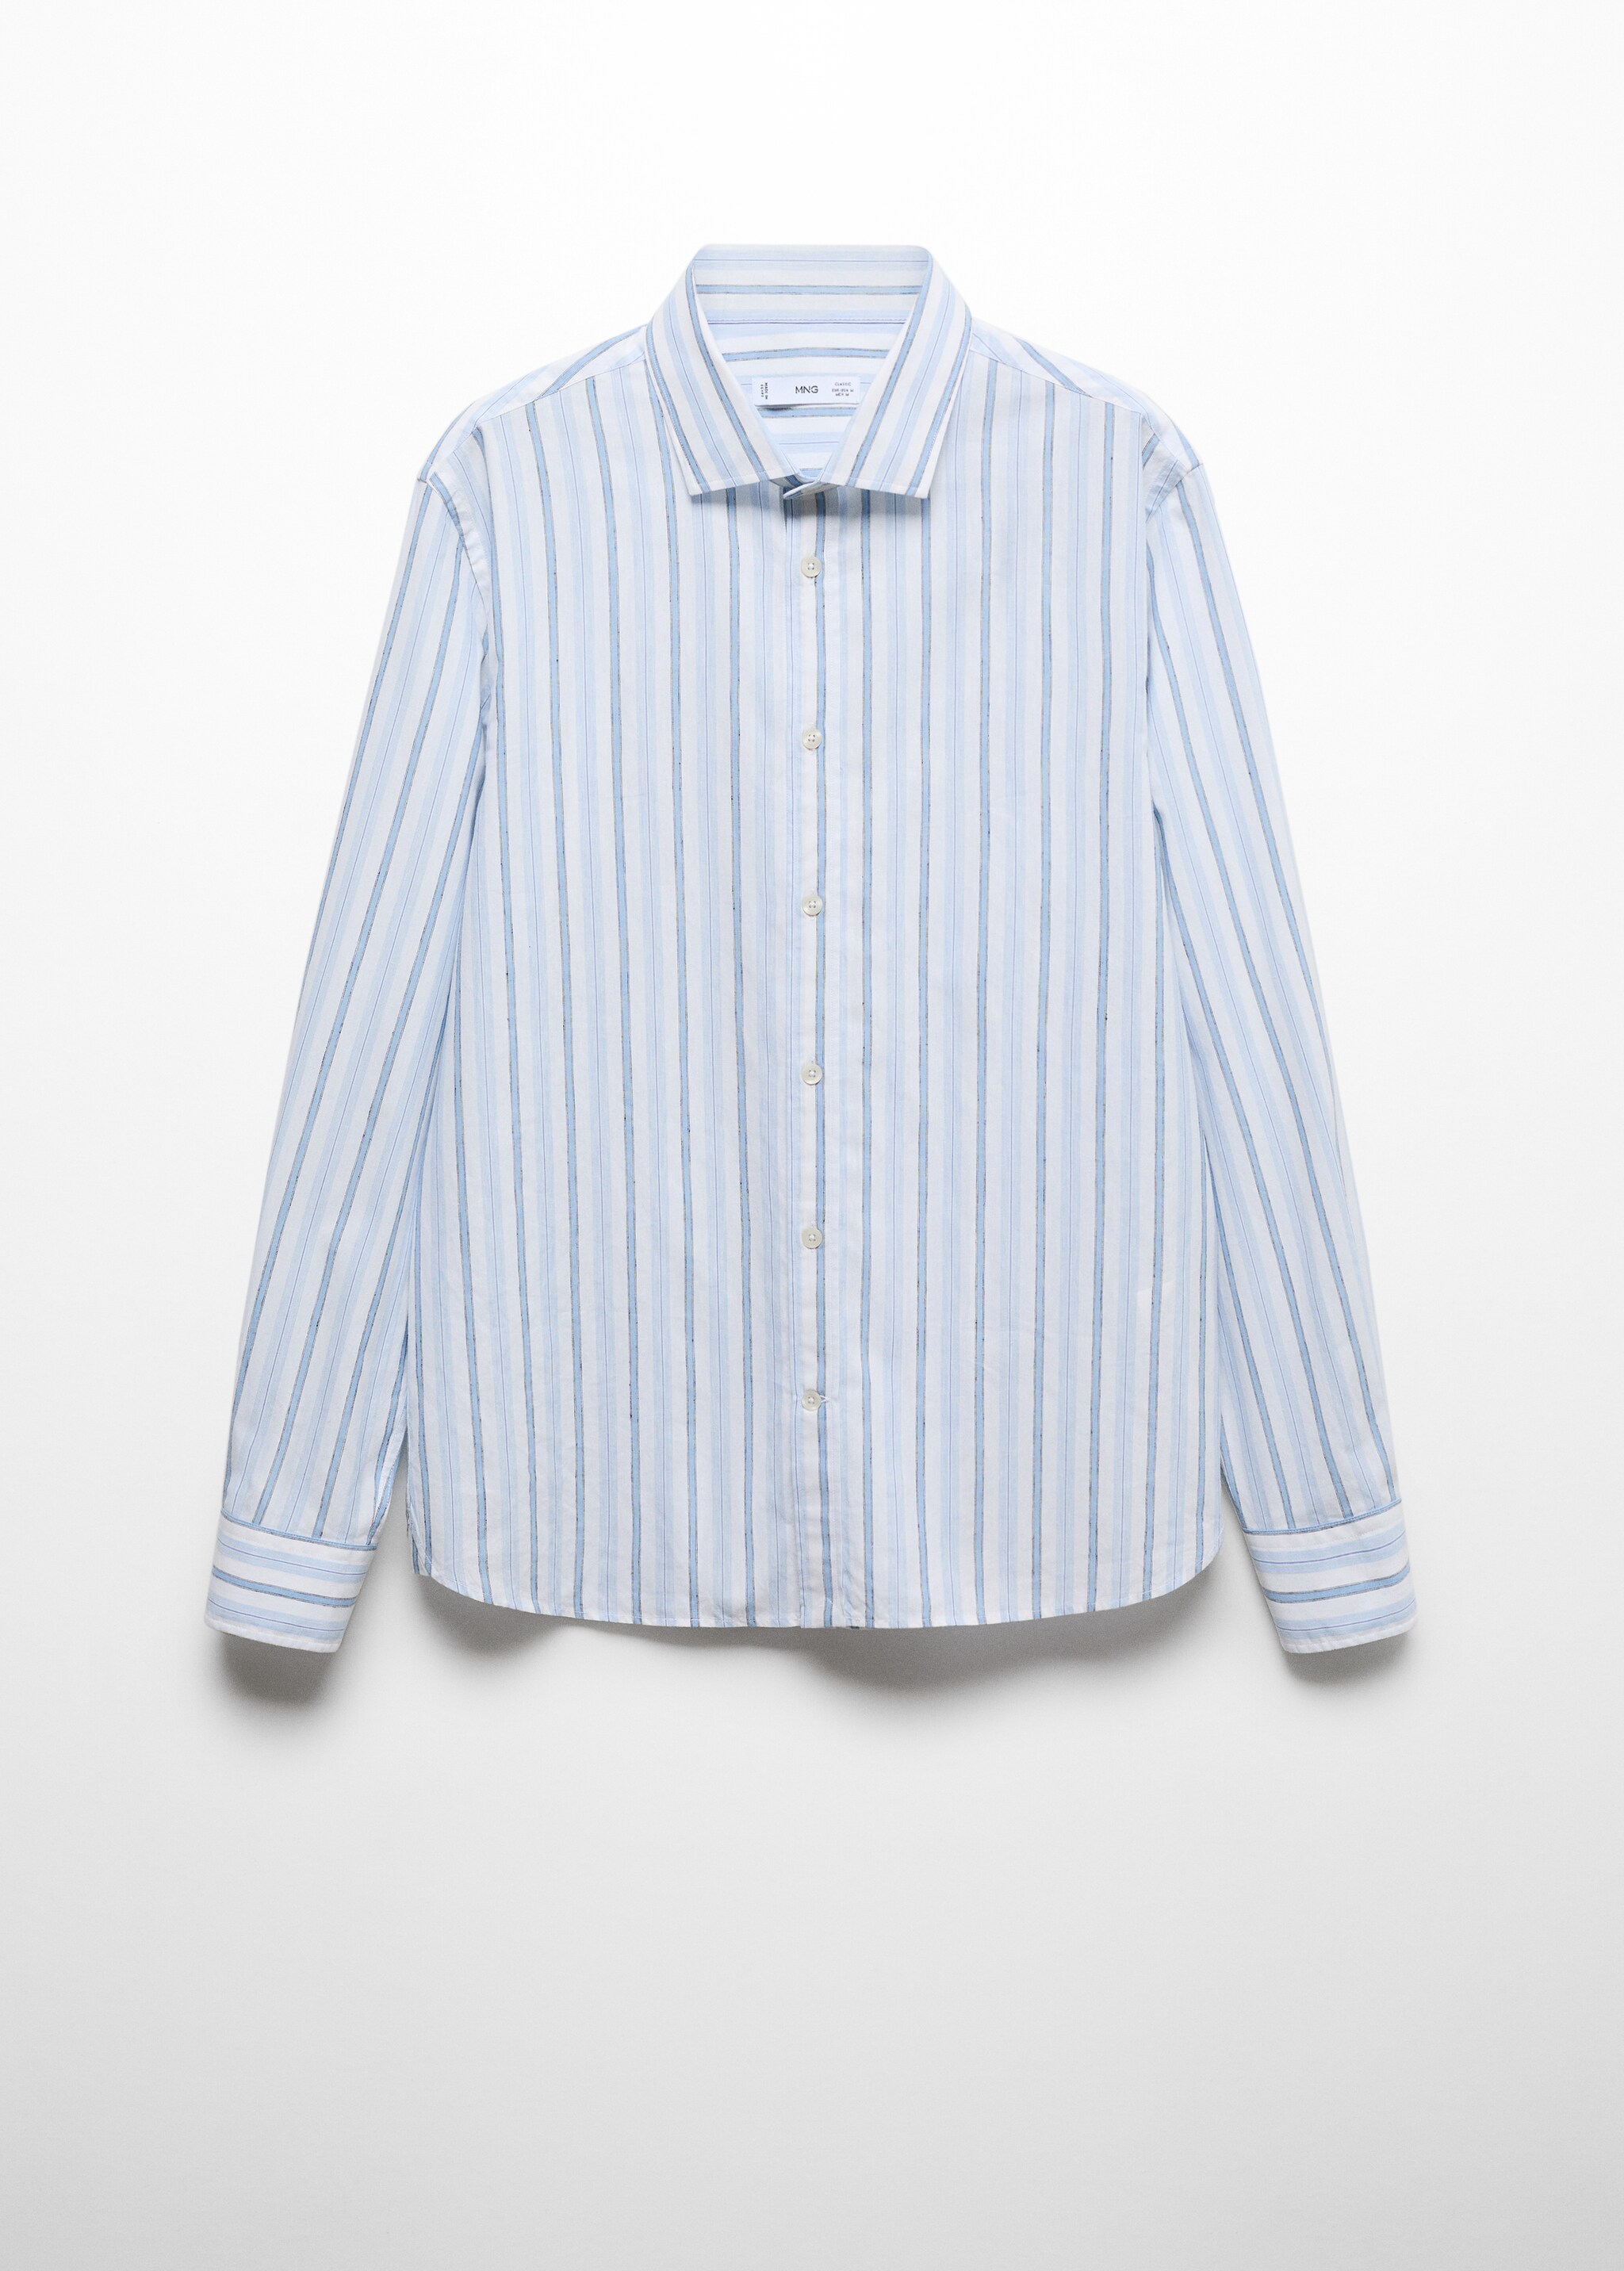 Camisa classic fit algodón lino rayas rústico - Artículo sin modelo